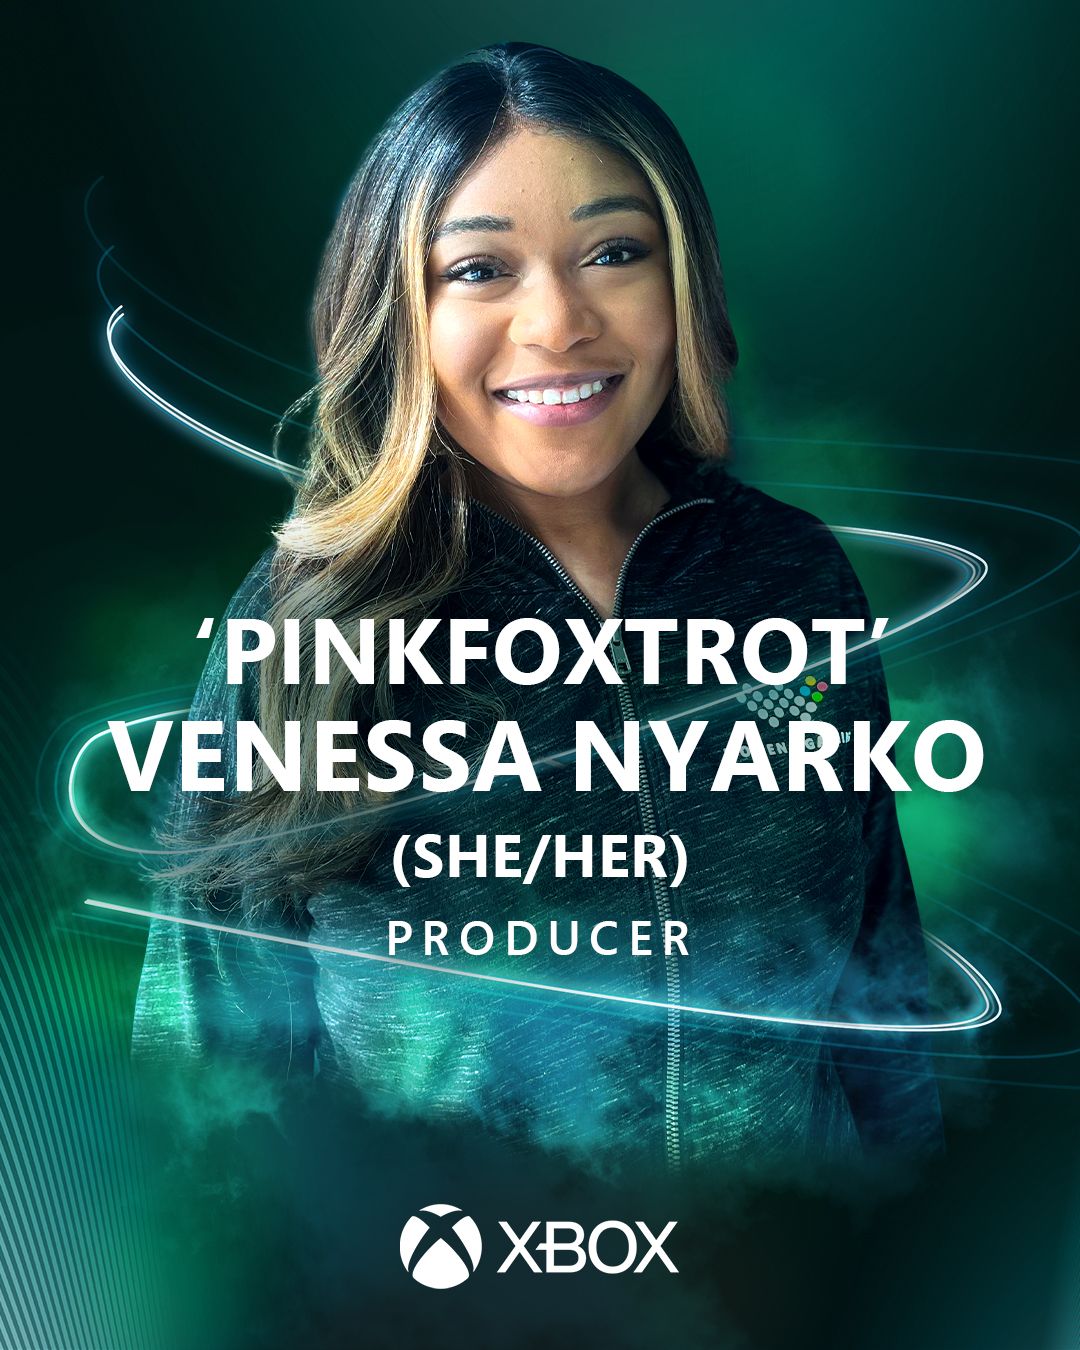 Venessa Nyarko (She/Her) Producer at The Coalition Region: Canada